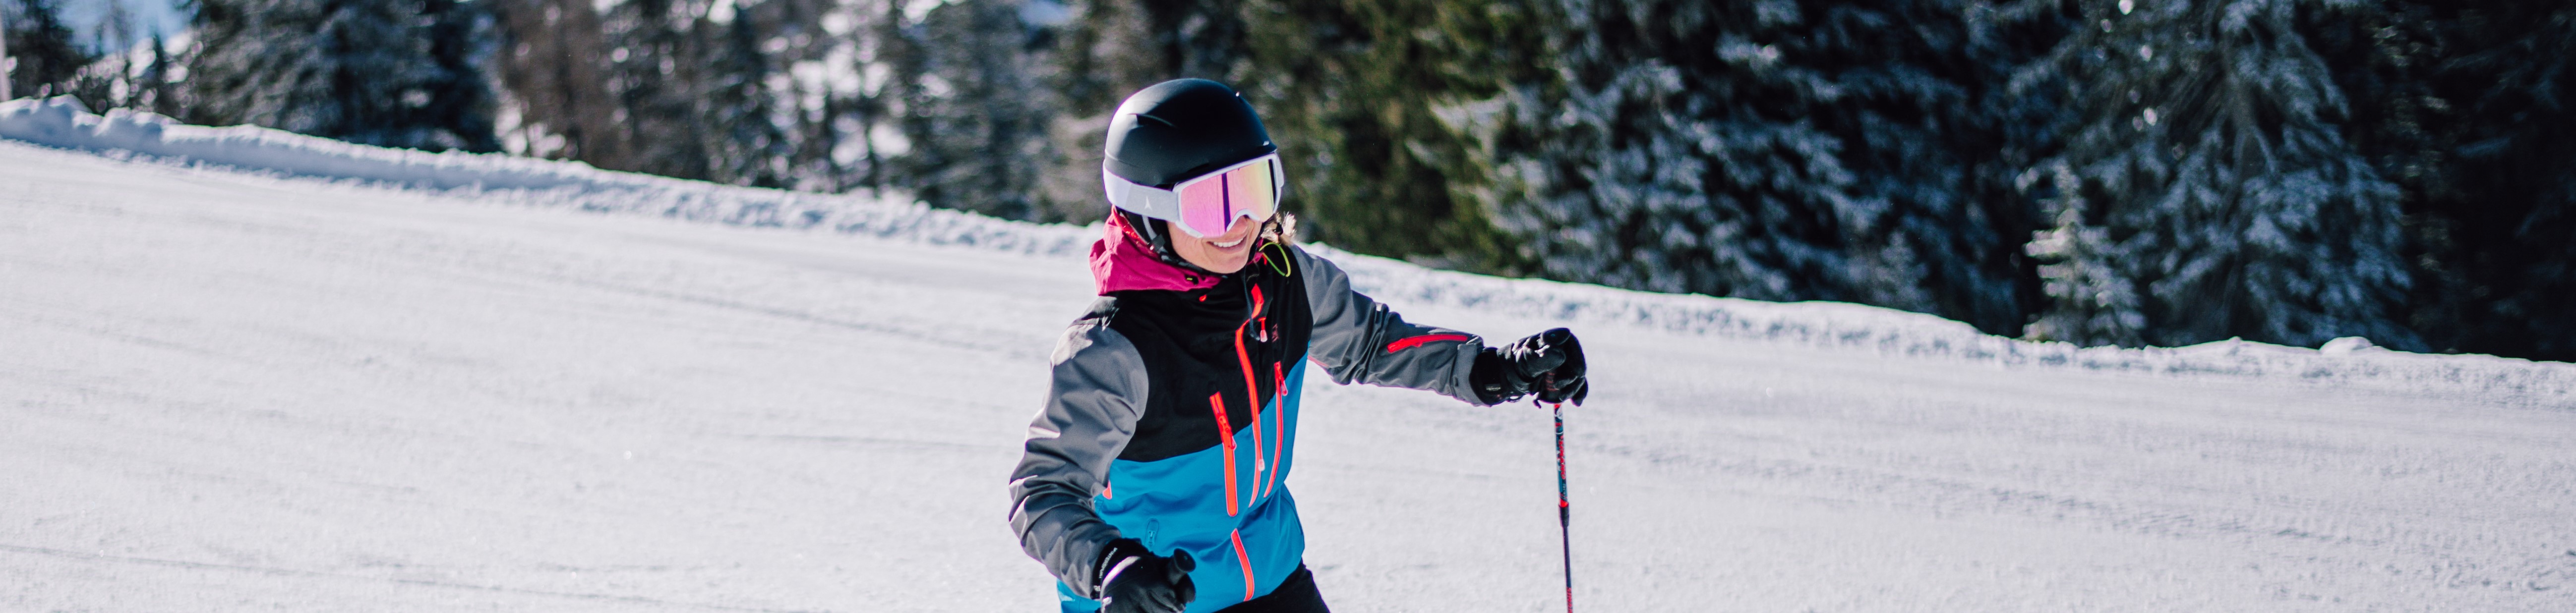 Skischule Sturm Jugendlichen Skikurs Lofer Salzburg Winterurlaub Familie